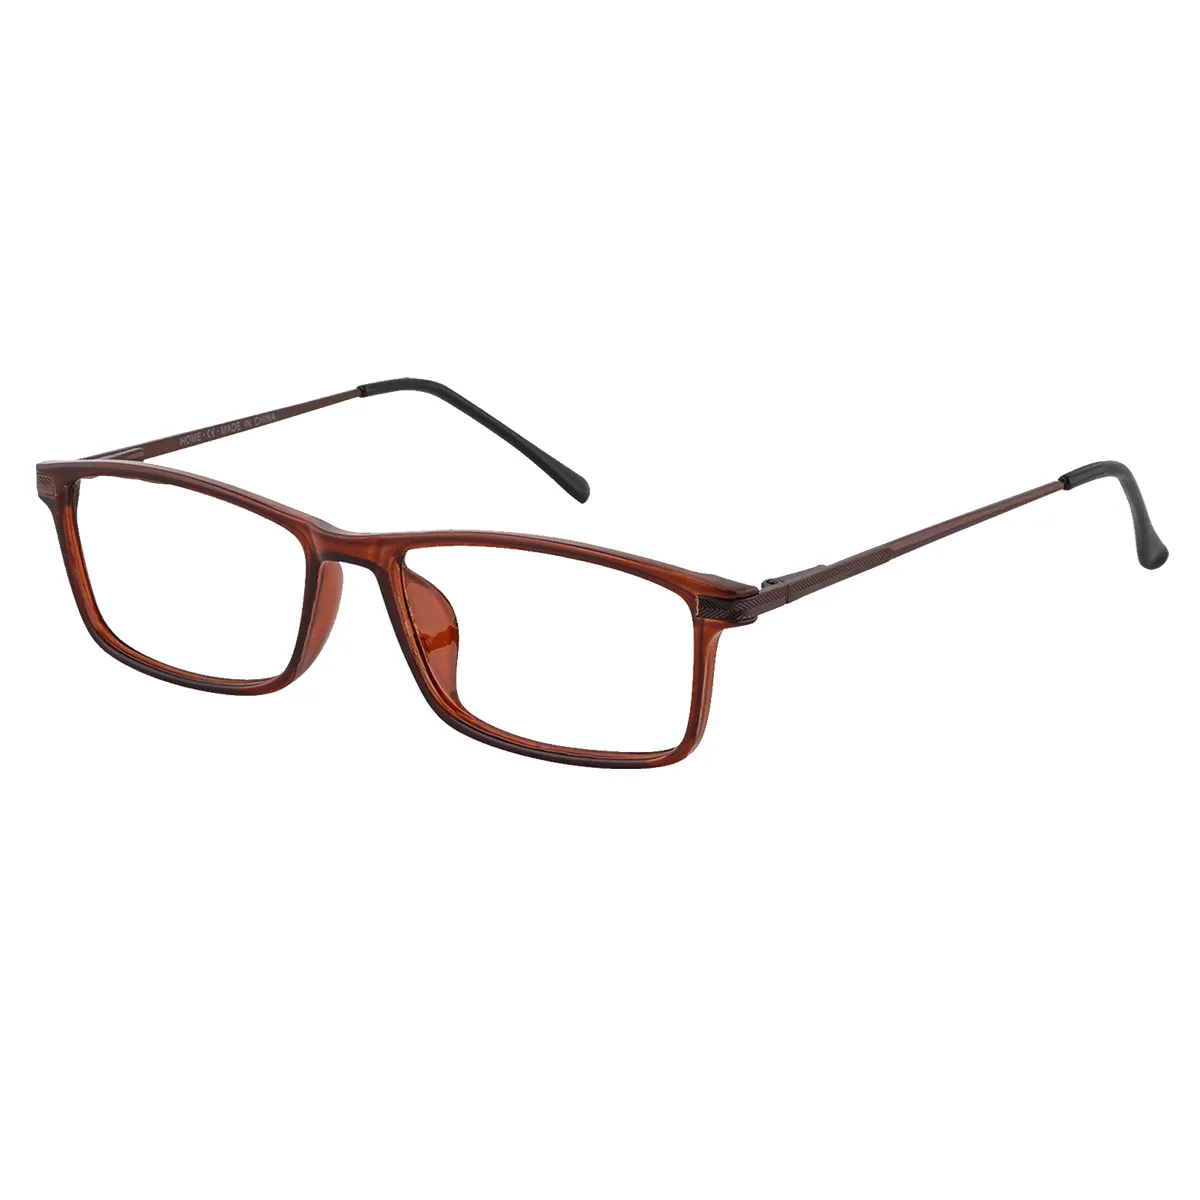 Ellis - Rectangle Brown Glasses for Men & Women